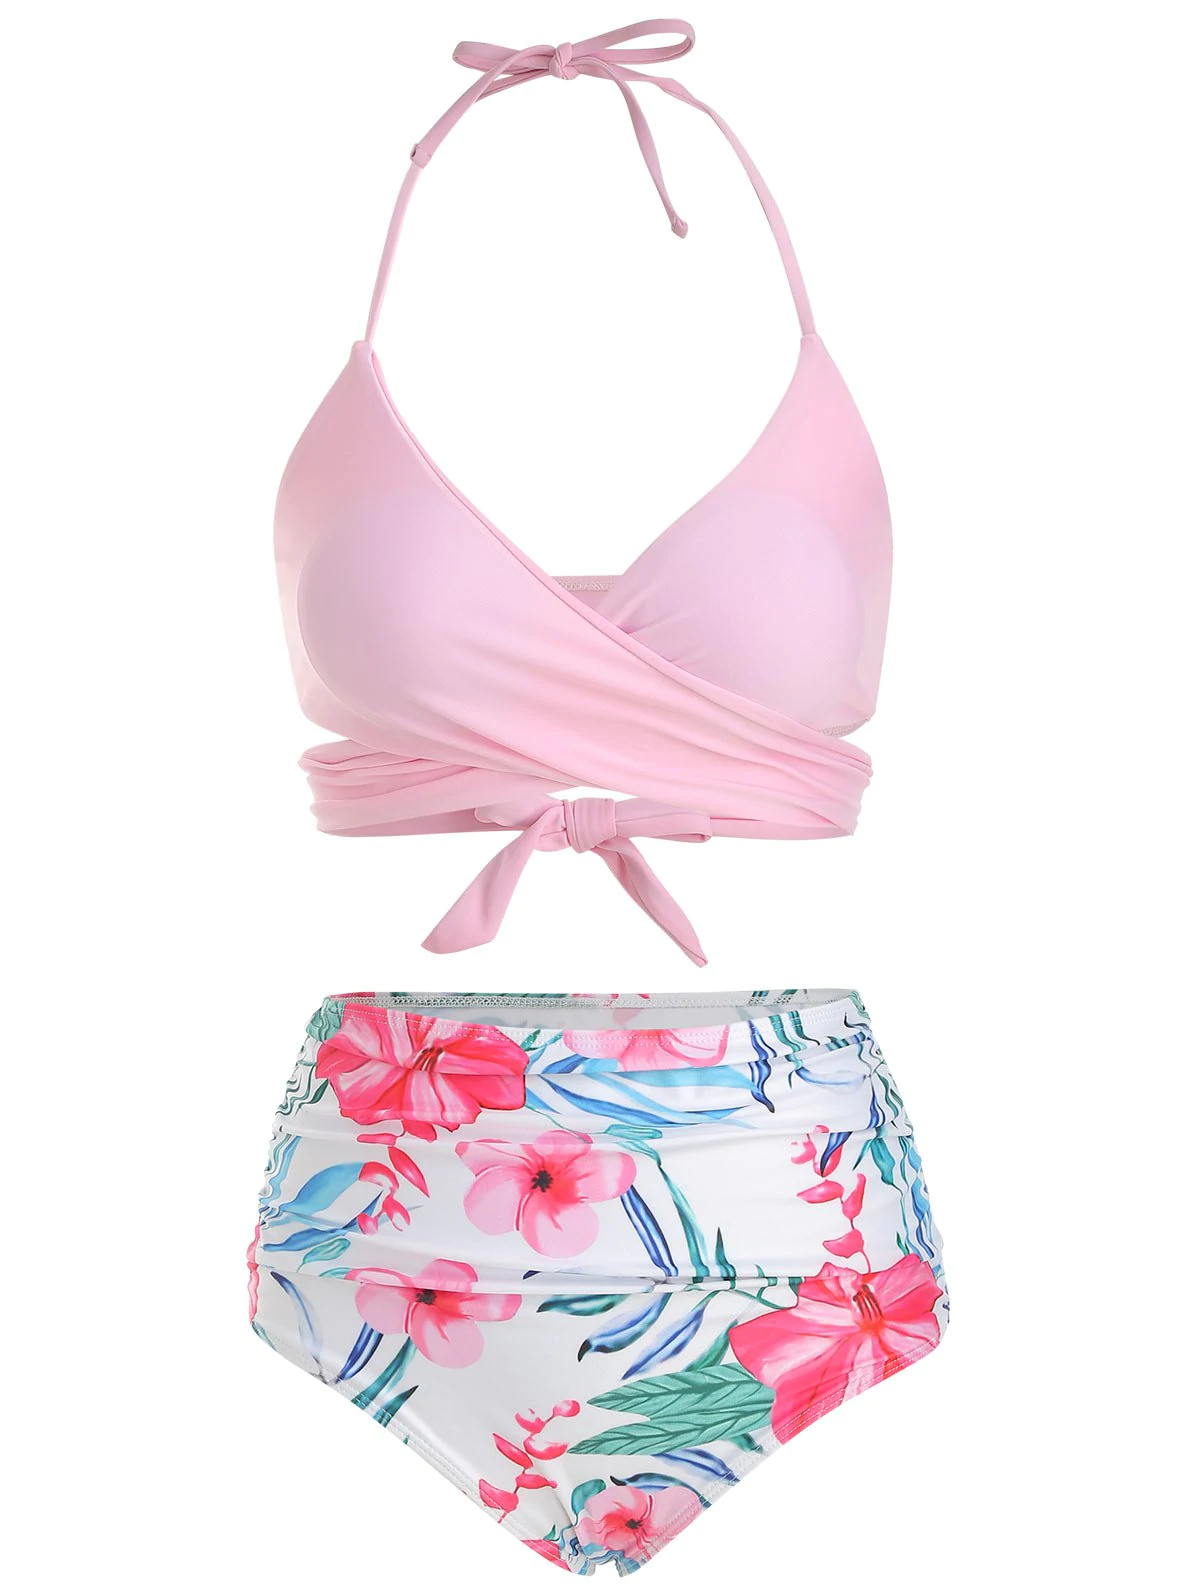 Floral Print Halter Wrap Bikini Swimsuit